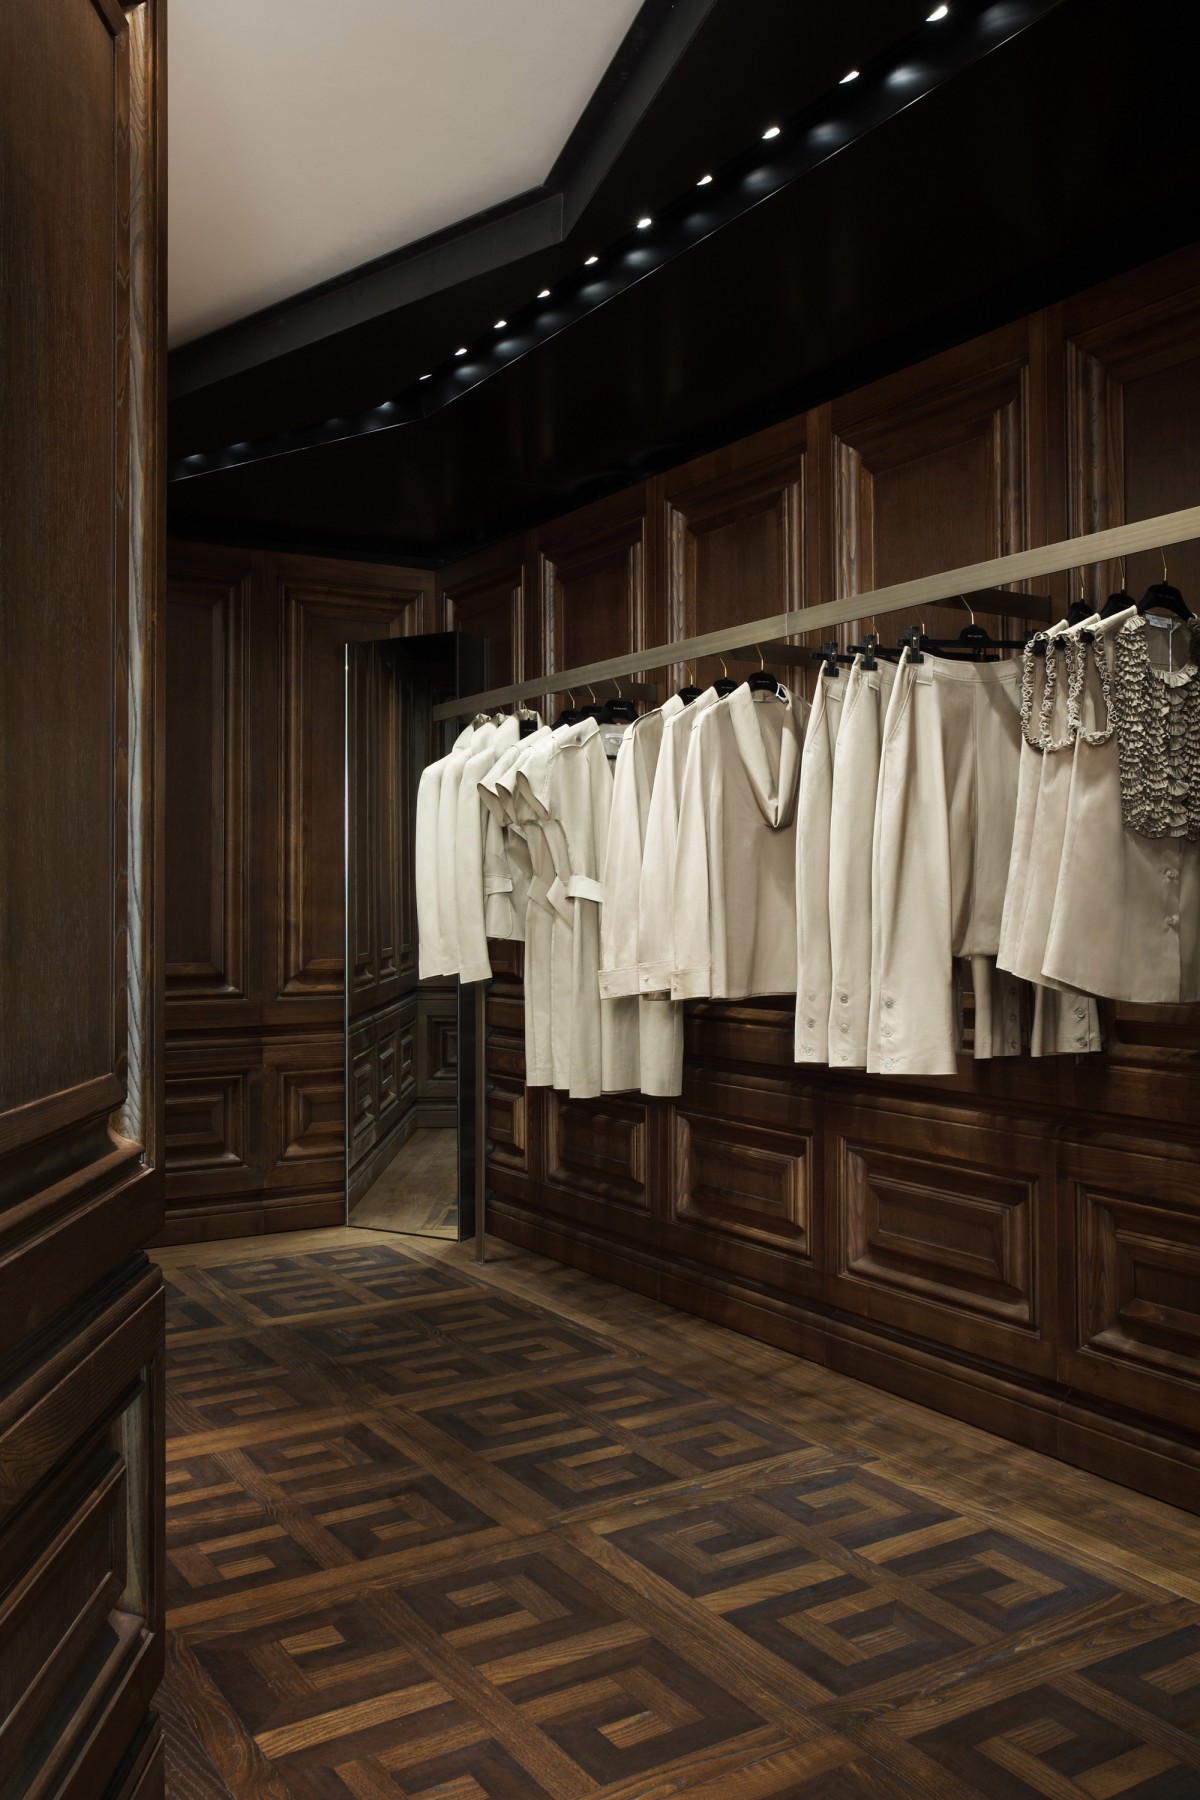 Givenchy-Paris-boutique-designer-fashion-retail-Jamie-Fobert-Architects-shop-8